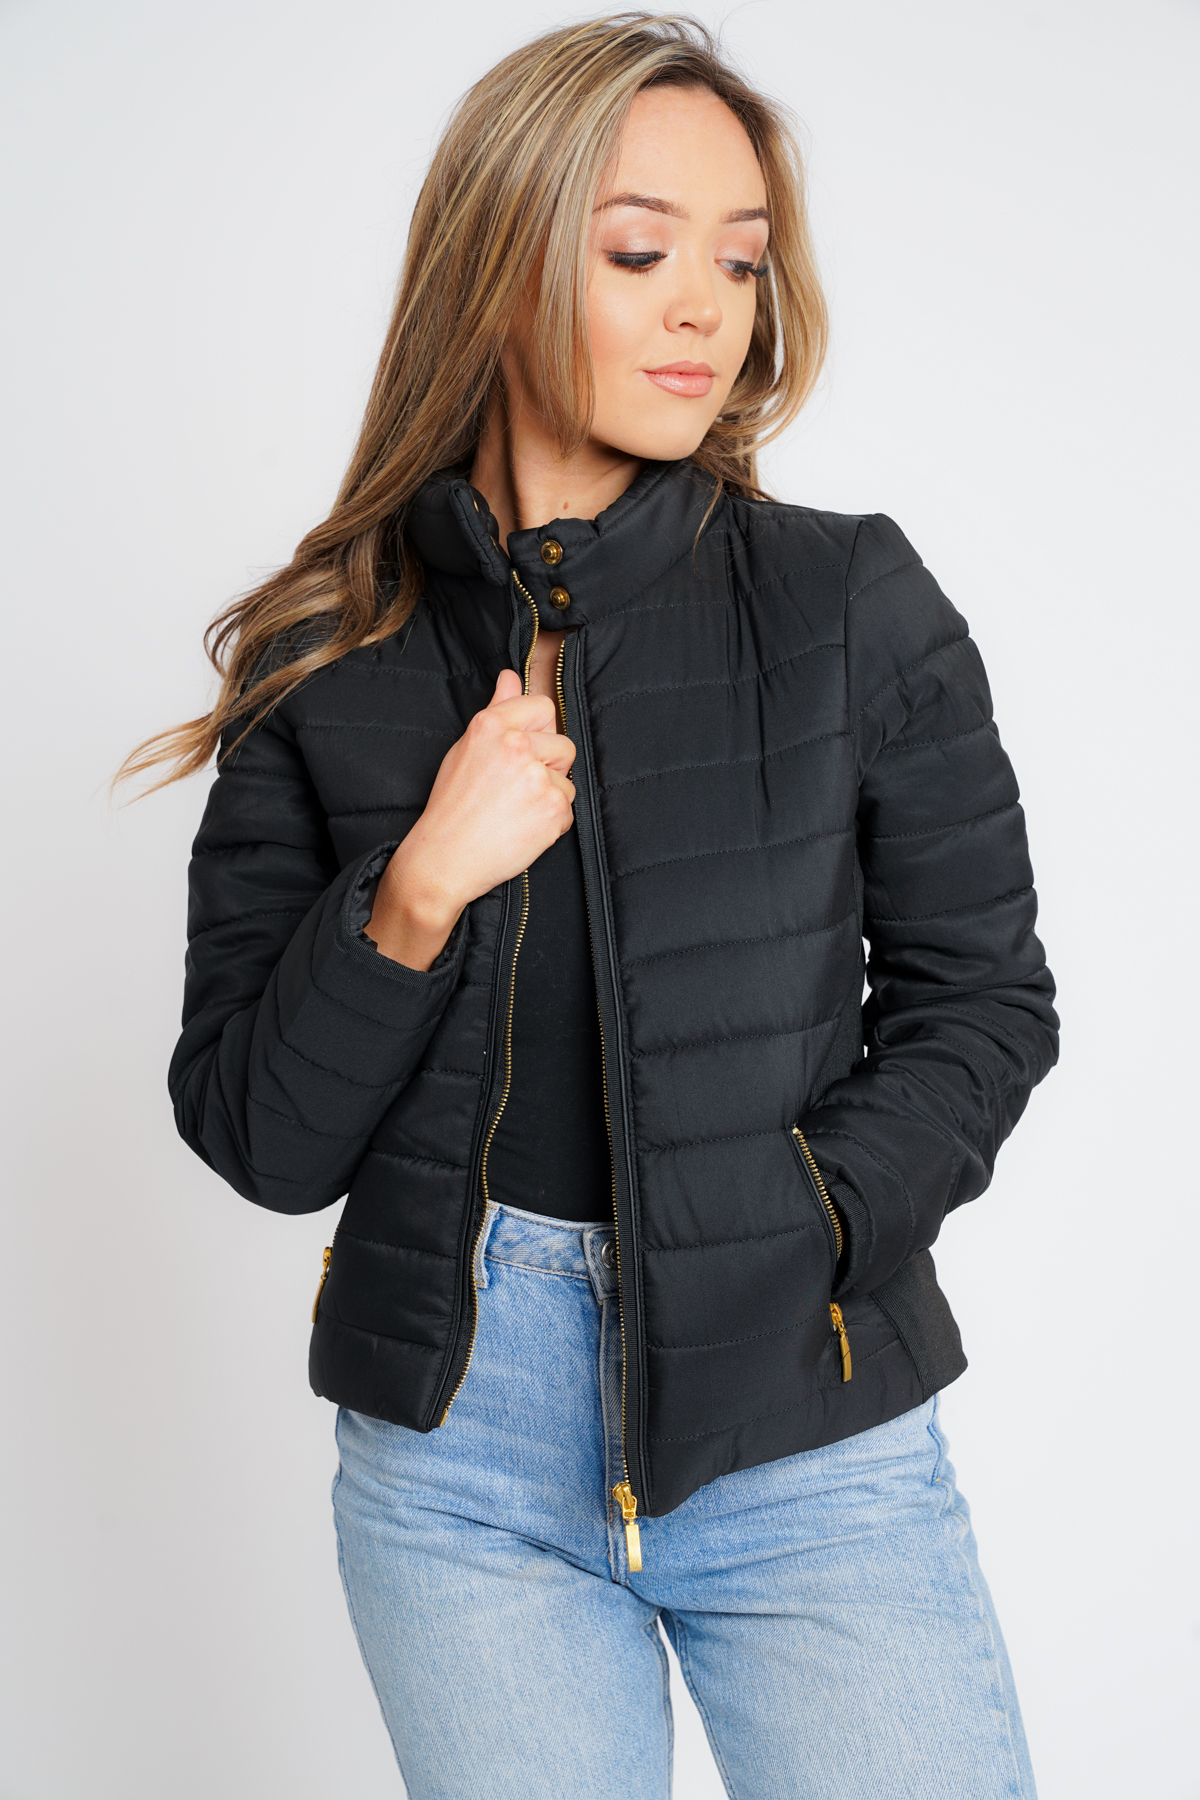 Ribbed Ladies Puffer Jacket | Affinity Wholesale Fashion